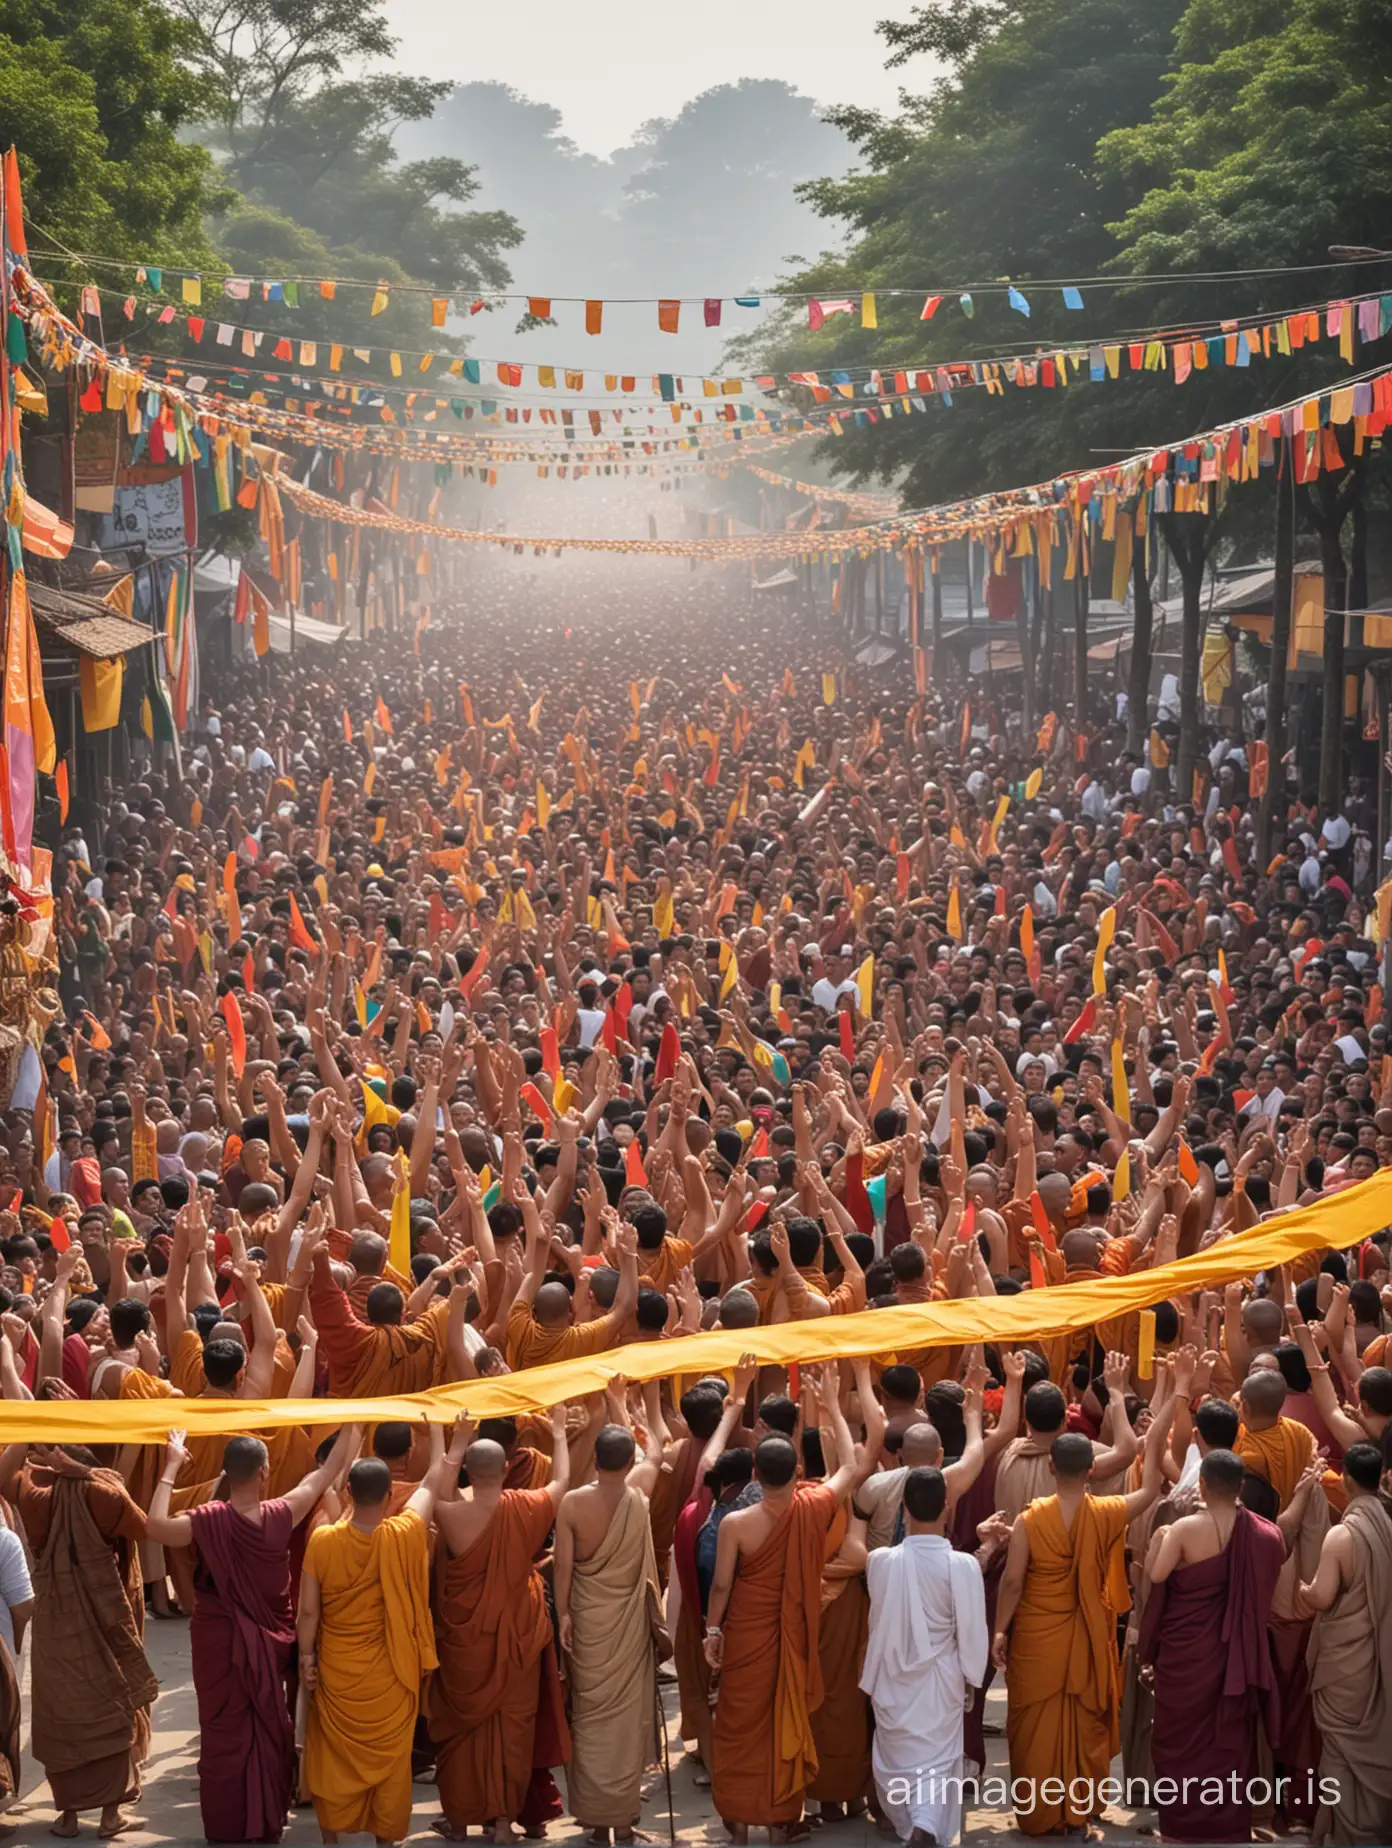 Colorful-Celebration-of-Future-Buddhas-Birth-in-the-Kingdom